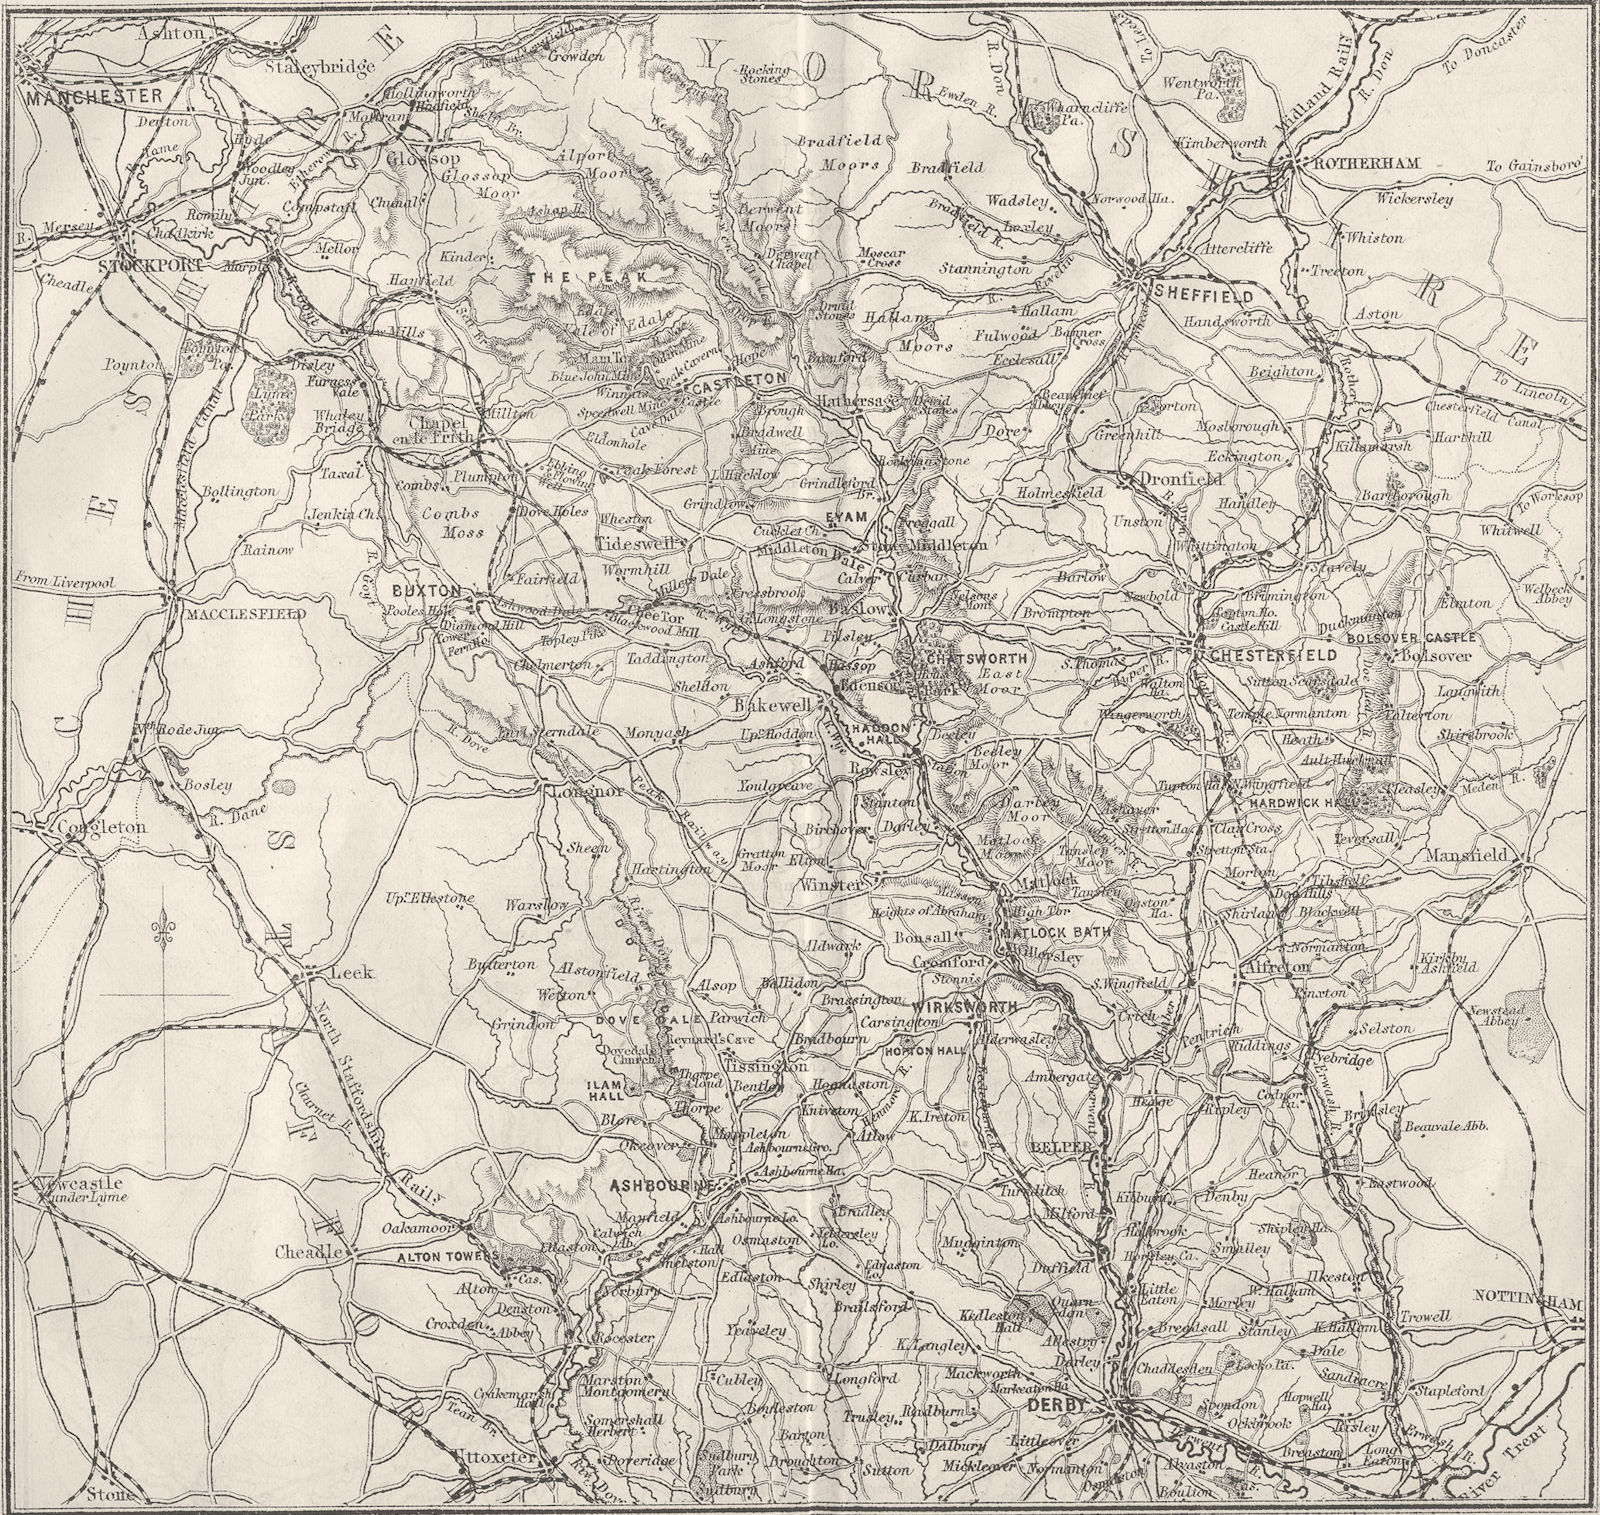 DERBYS. Derbyshire 1874 old antique vintage map plan chart